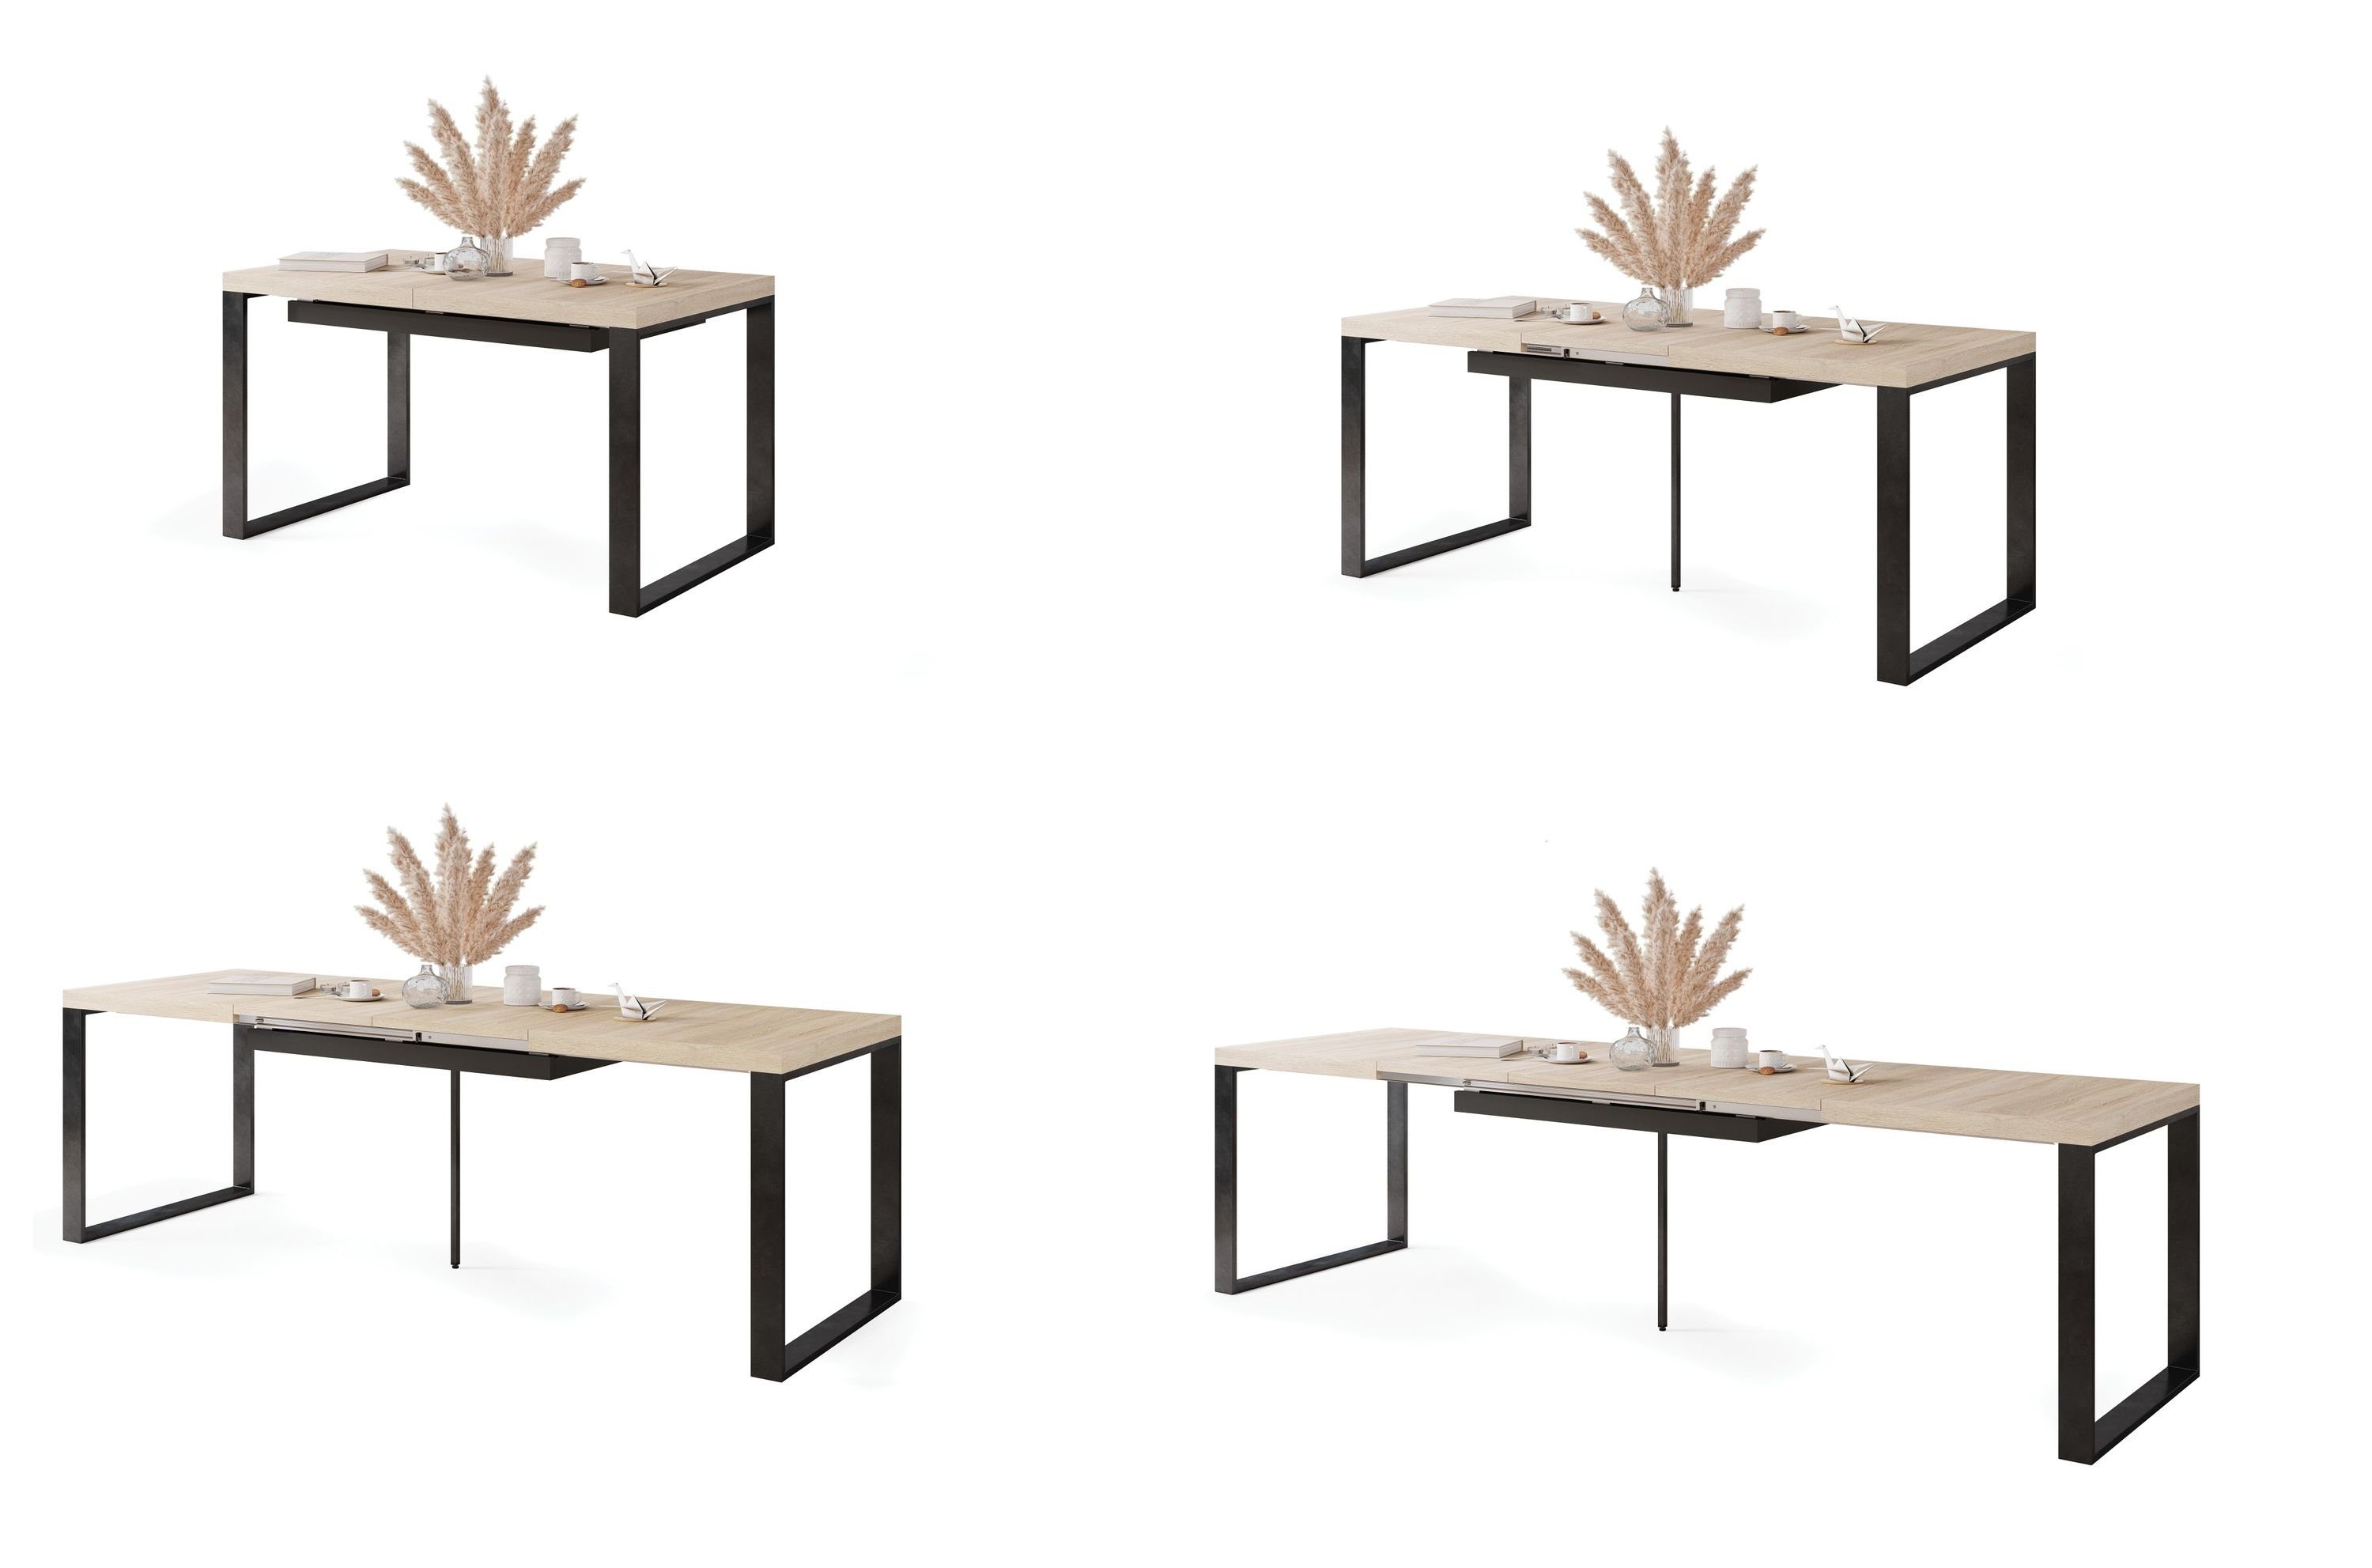 290 cm Mazzoni 140 Eiche Esstisch / Esstisch ausziehbar Design Avari Sonoma matt Tisch bis Schwarz